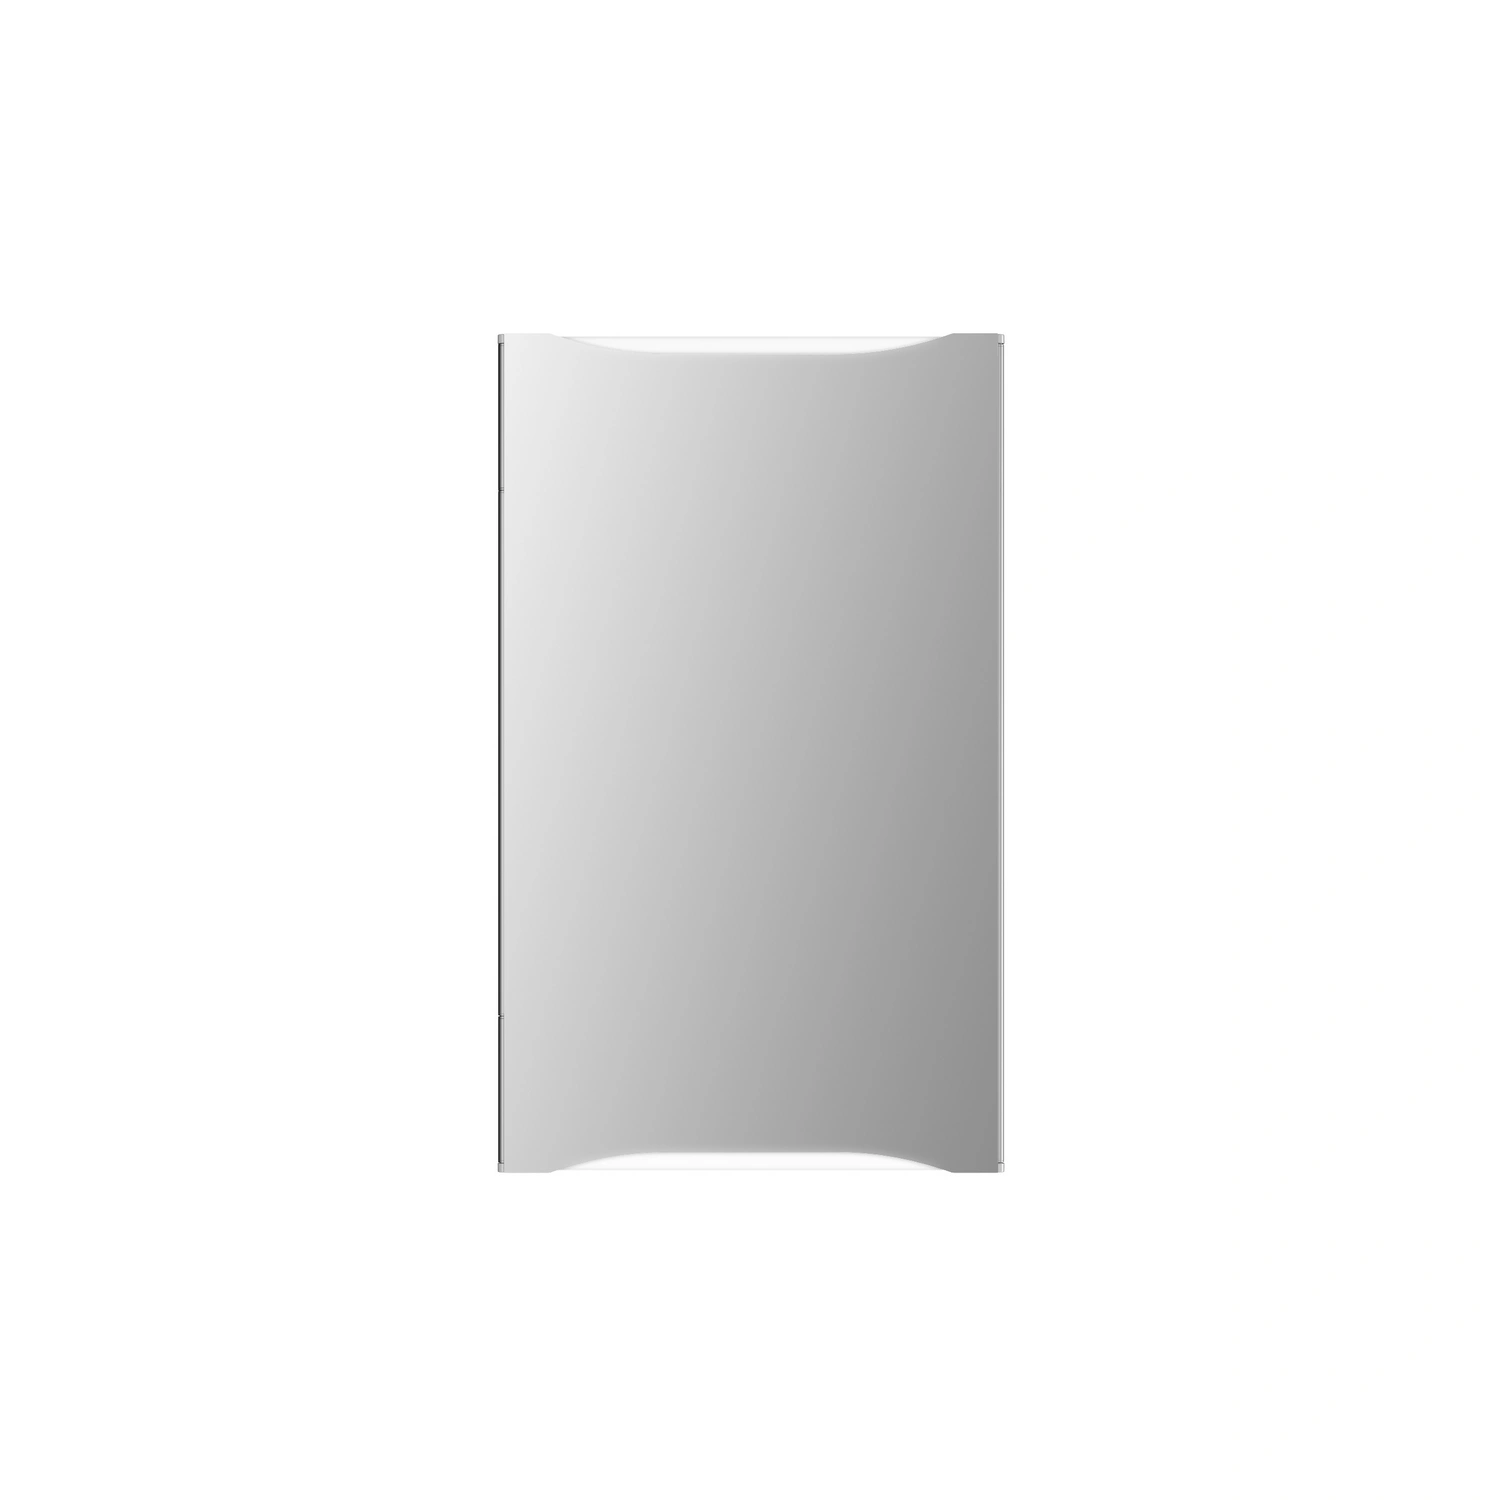 JOKEY Spiegelschrank, BxHxT: 44,6 16,8 x cm, transparent/weiß 73,5 x